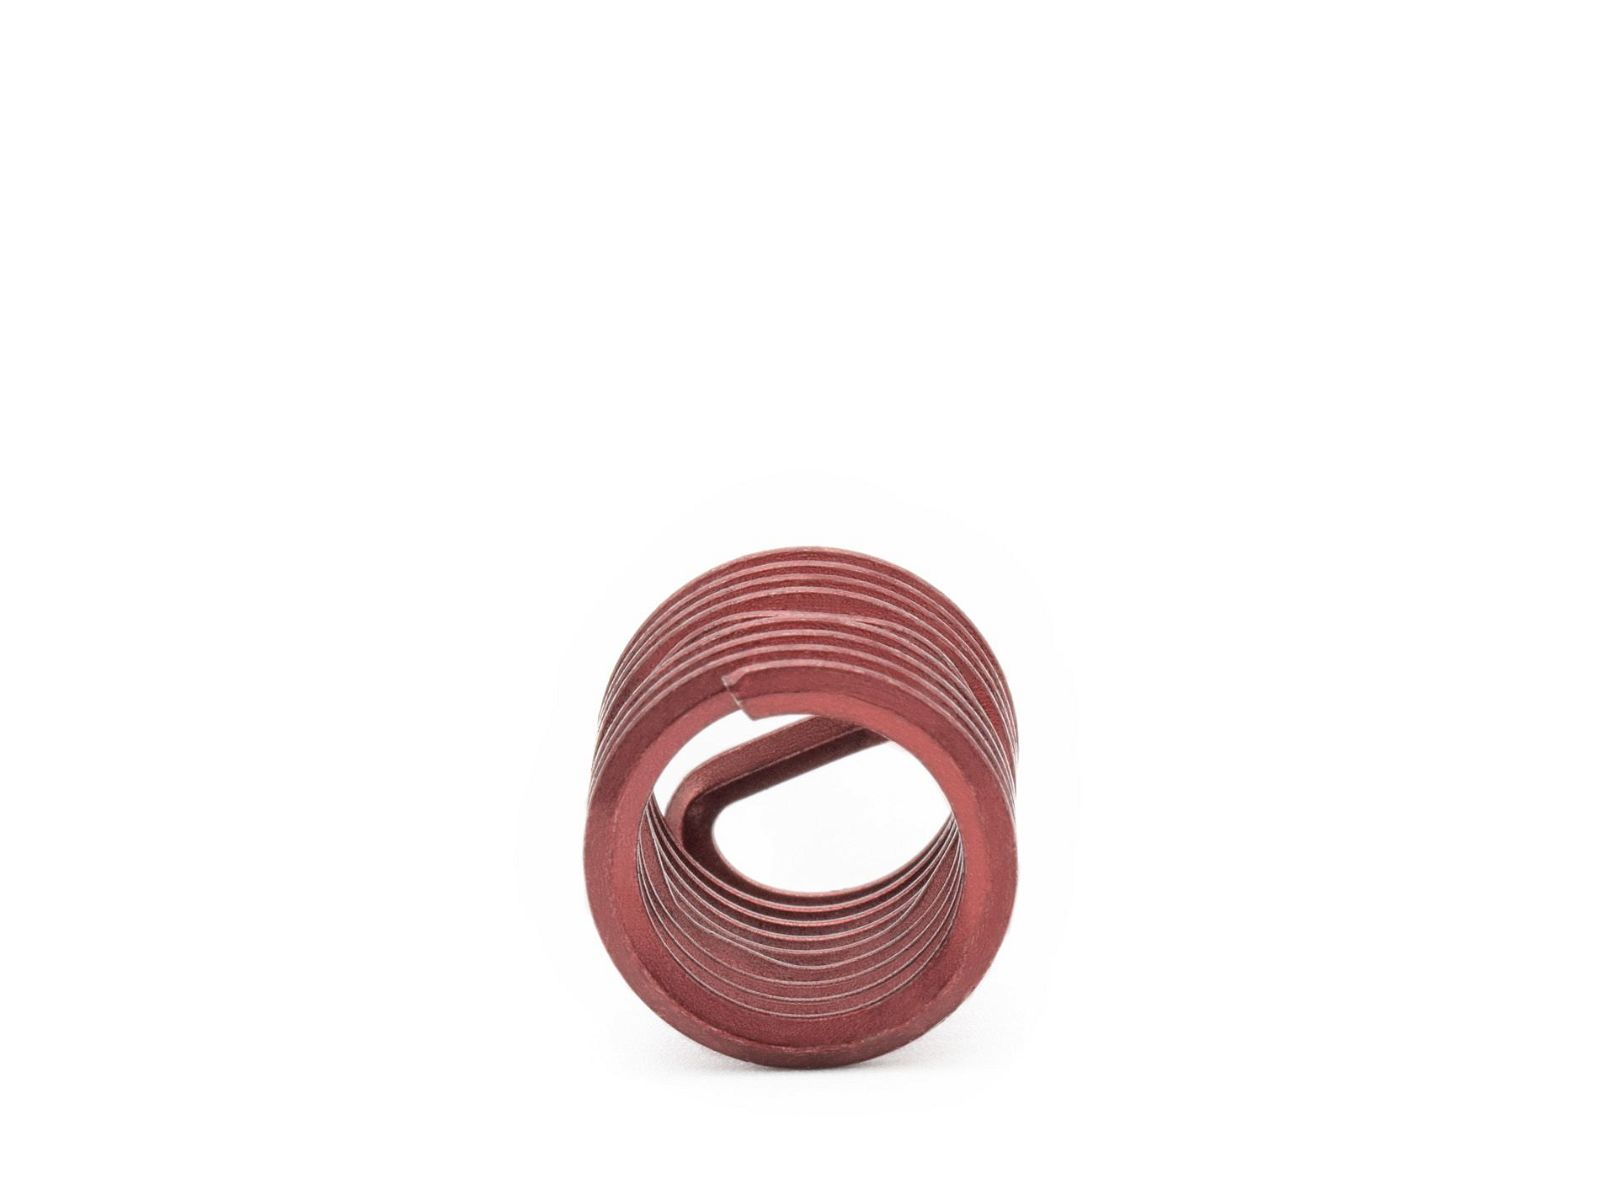 BaerCoil Wire Thread Inserts M 10 x 1.25 - 1.5 D (15 mm) - screw grip (screw locking) - 100 pcs.